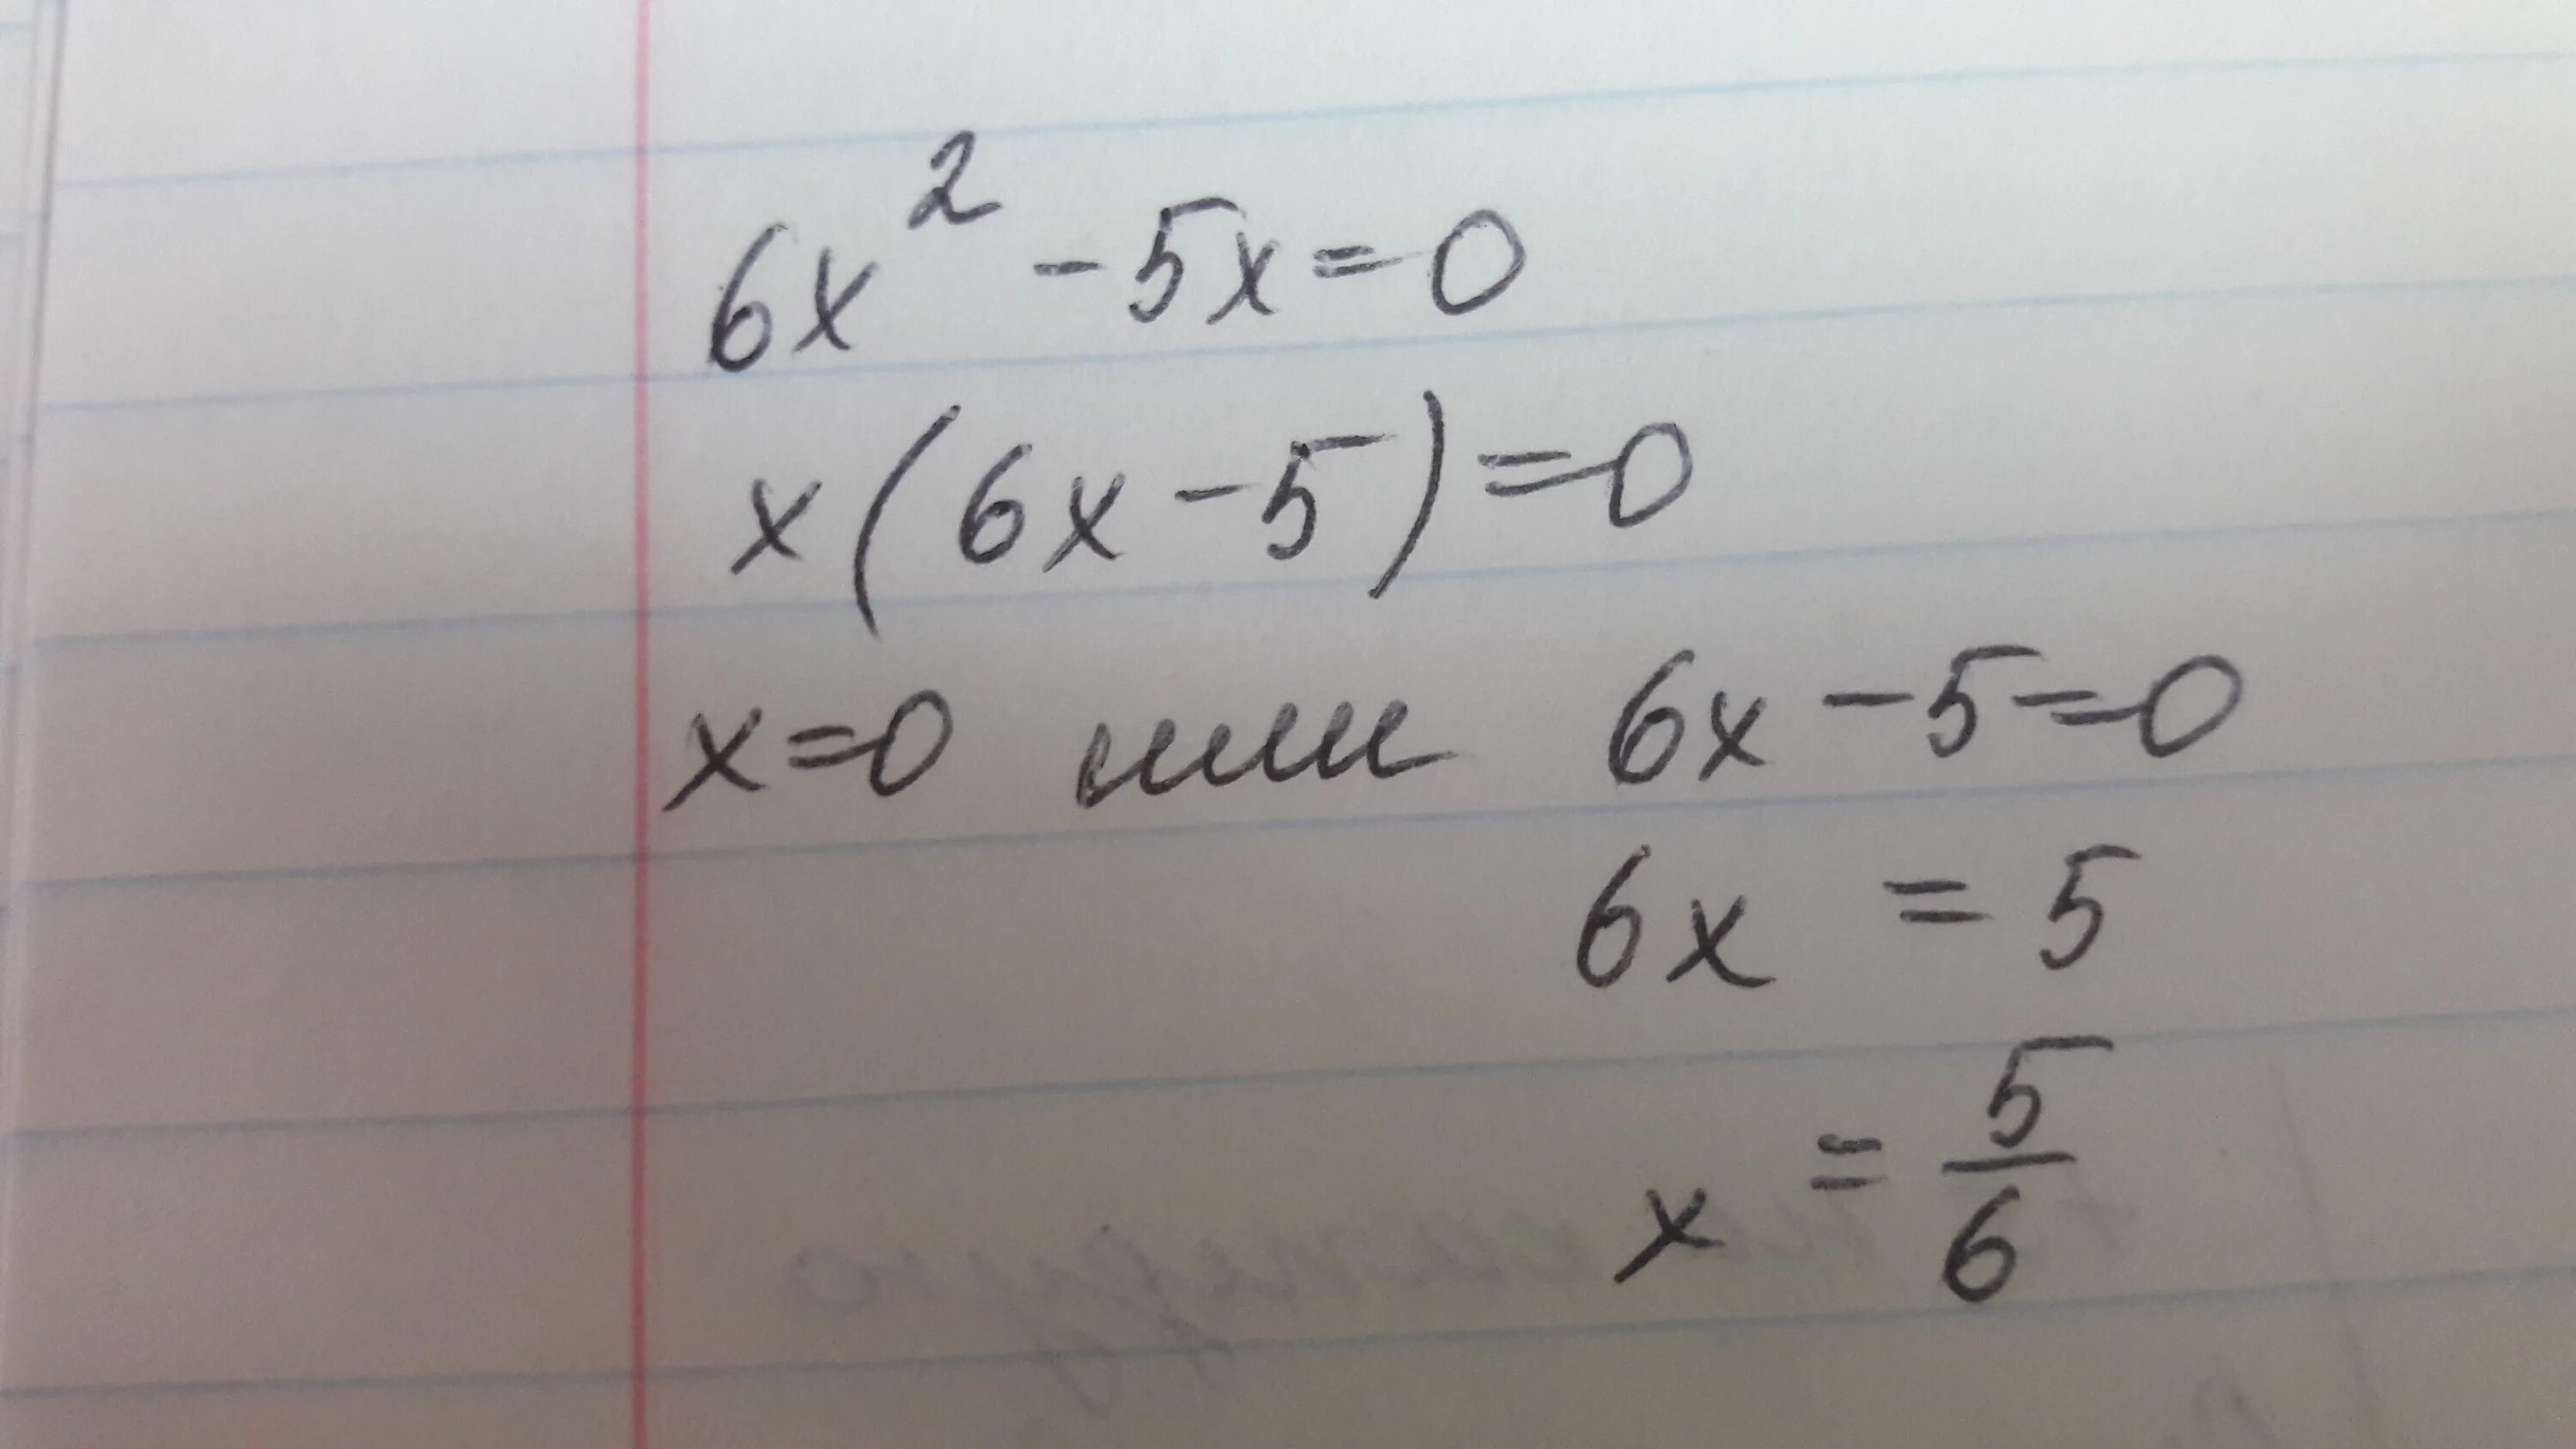 Минус 0 6 плюс 1 1. Икс в квадрате плюс 6 Икс равно 0. Икс в квадрате минус 2 Икс равно 0. Икс в квадрате + 6 равно 5 Икс. Икс в квадрате минус 5 Икс.